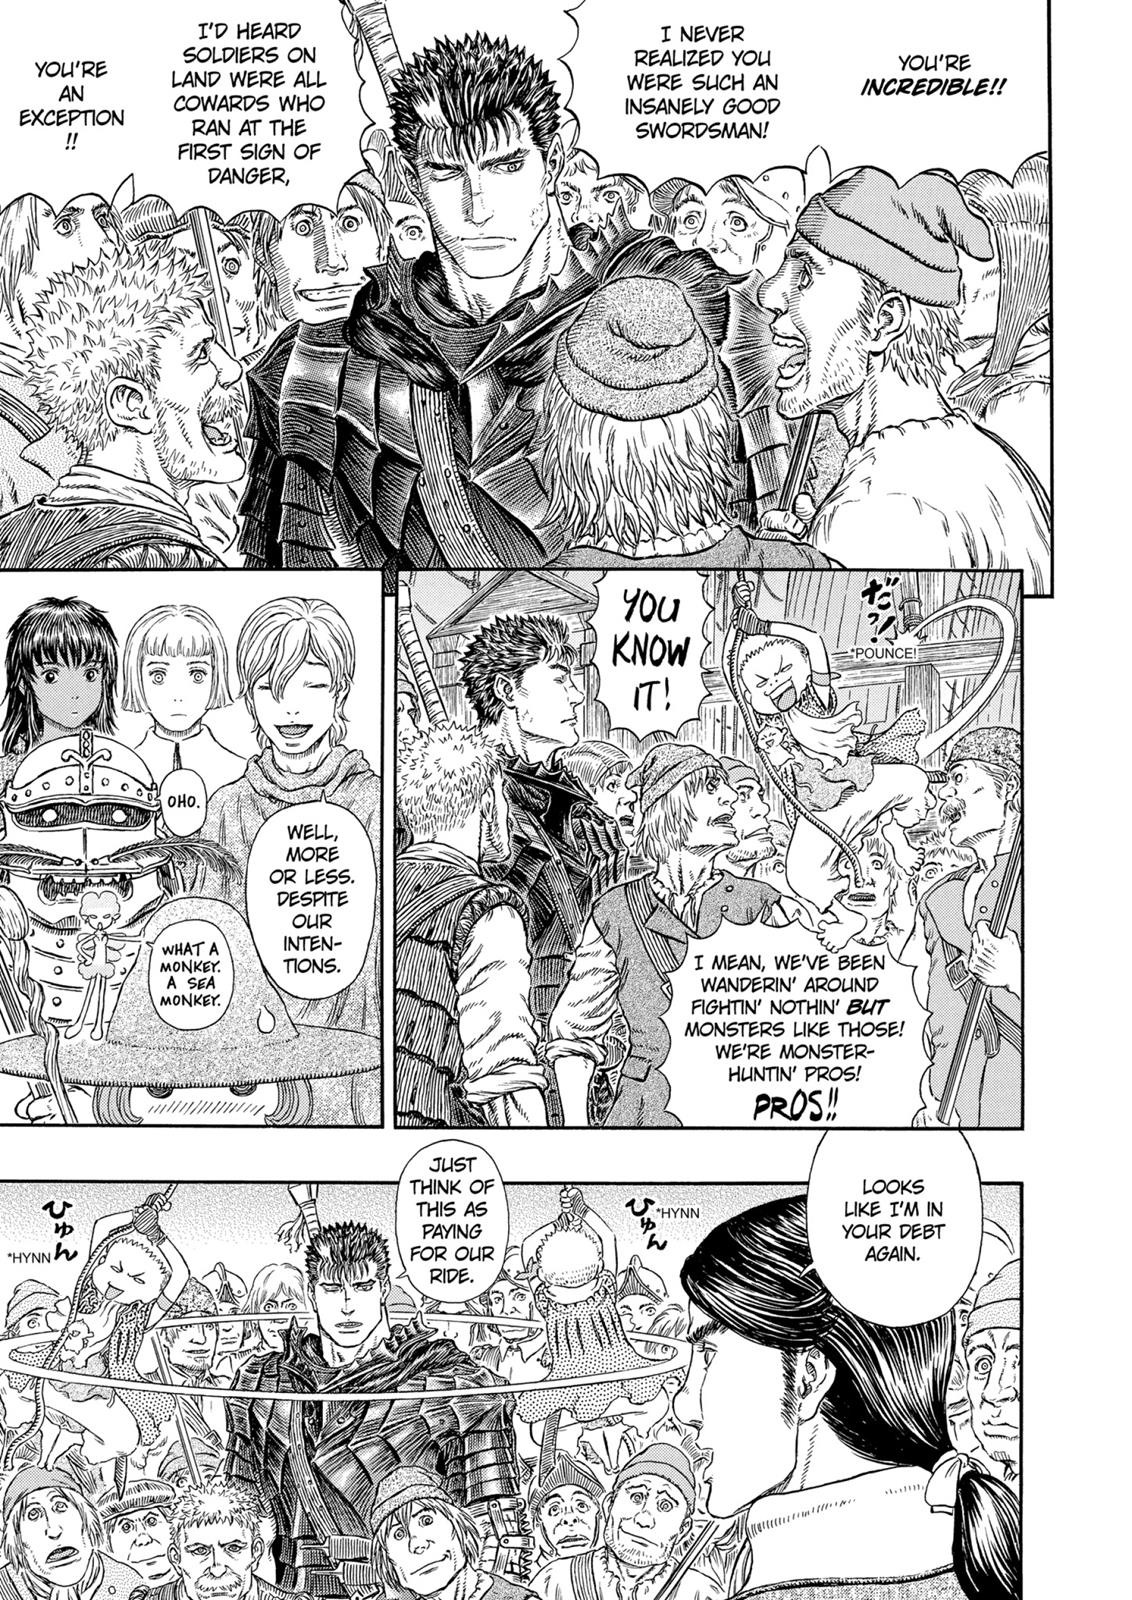 Berserk Manga Chapter 311 image 06